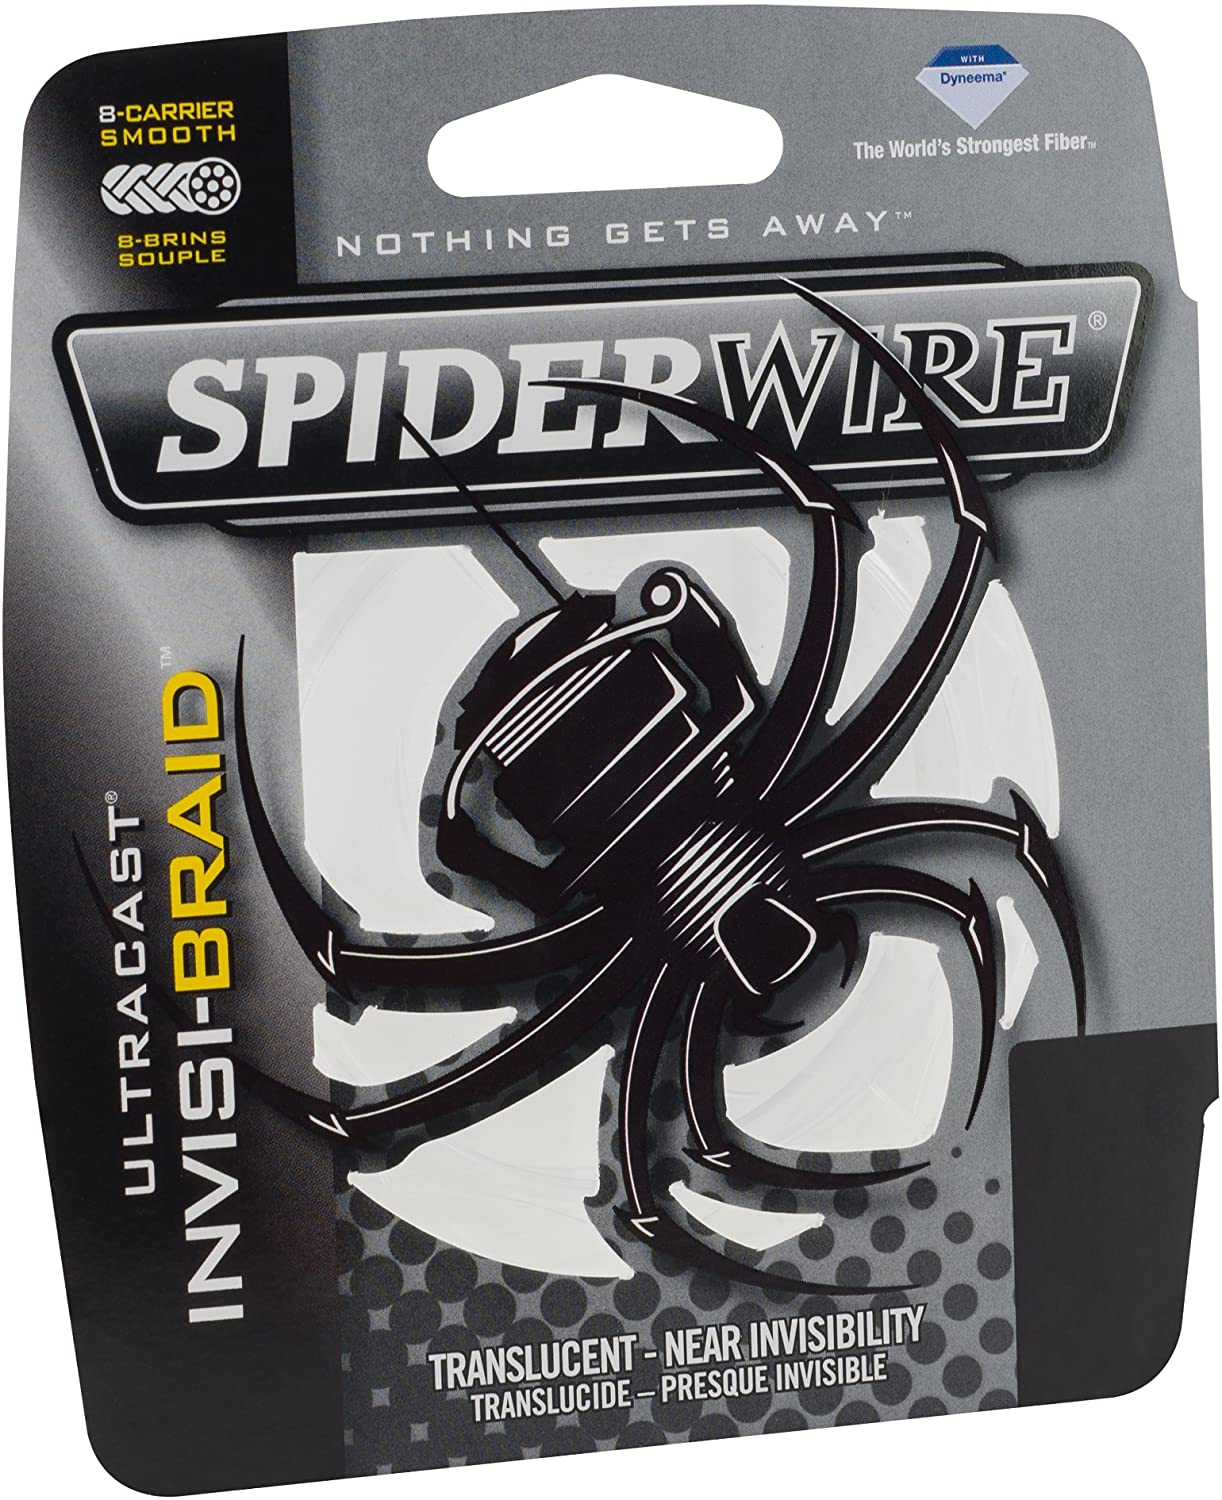 SpiderWire Ultracast Braid